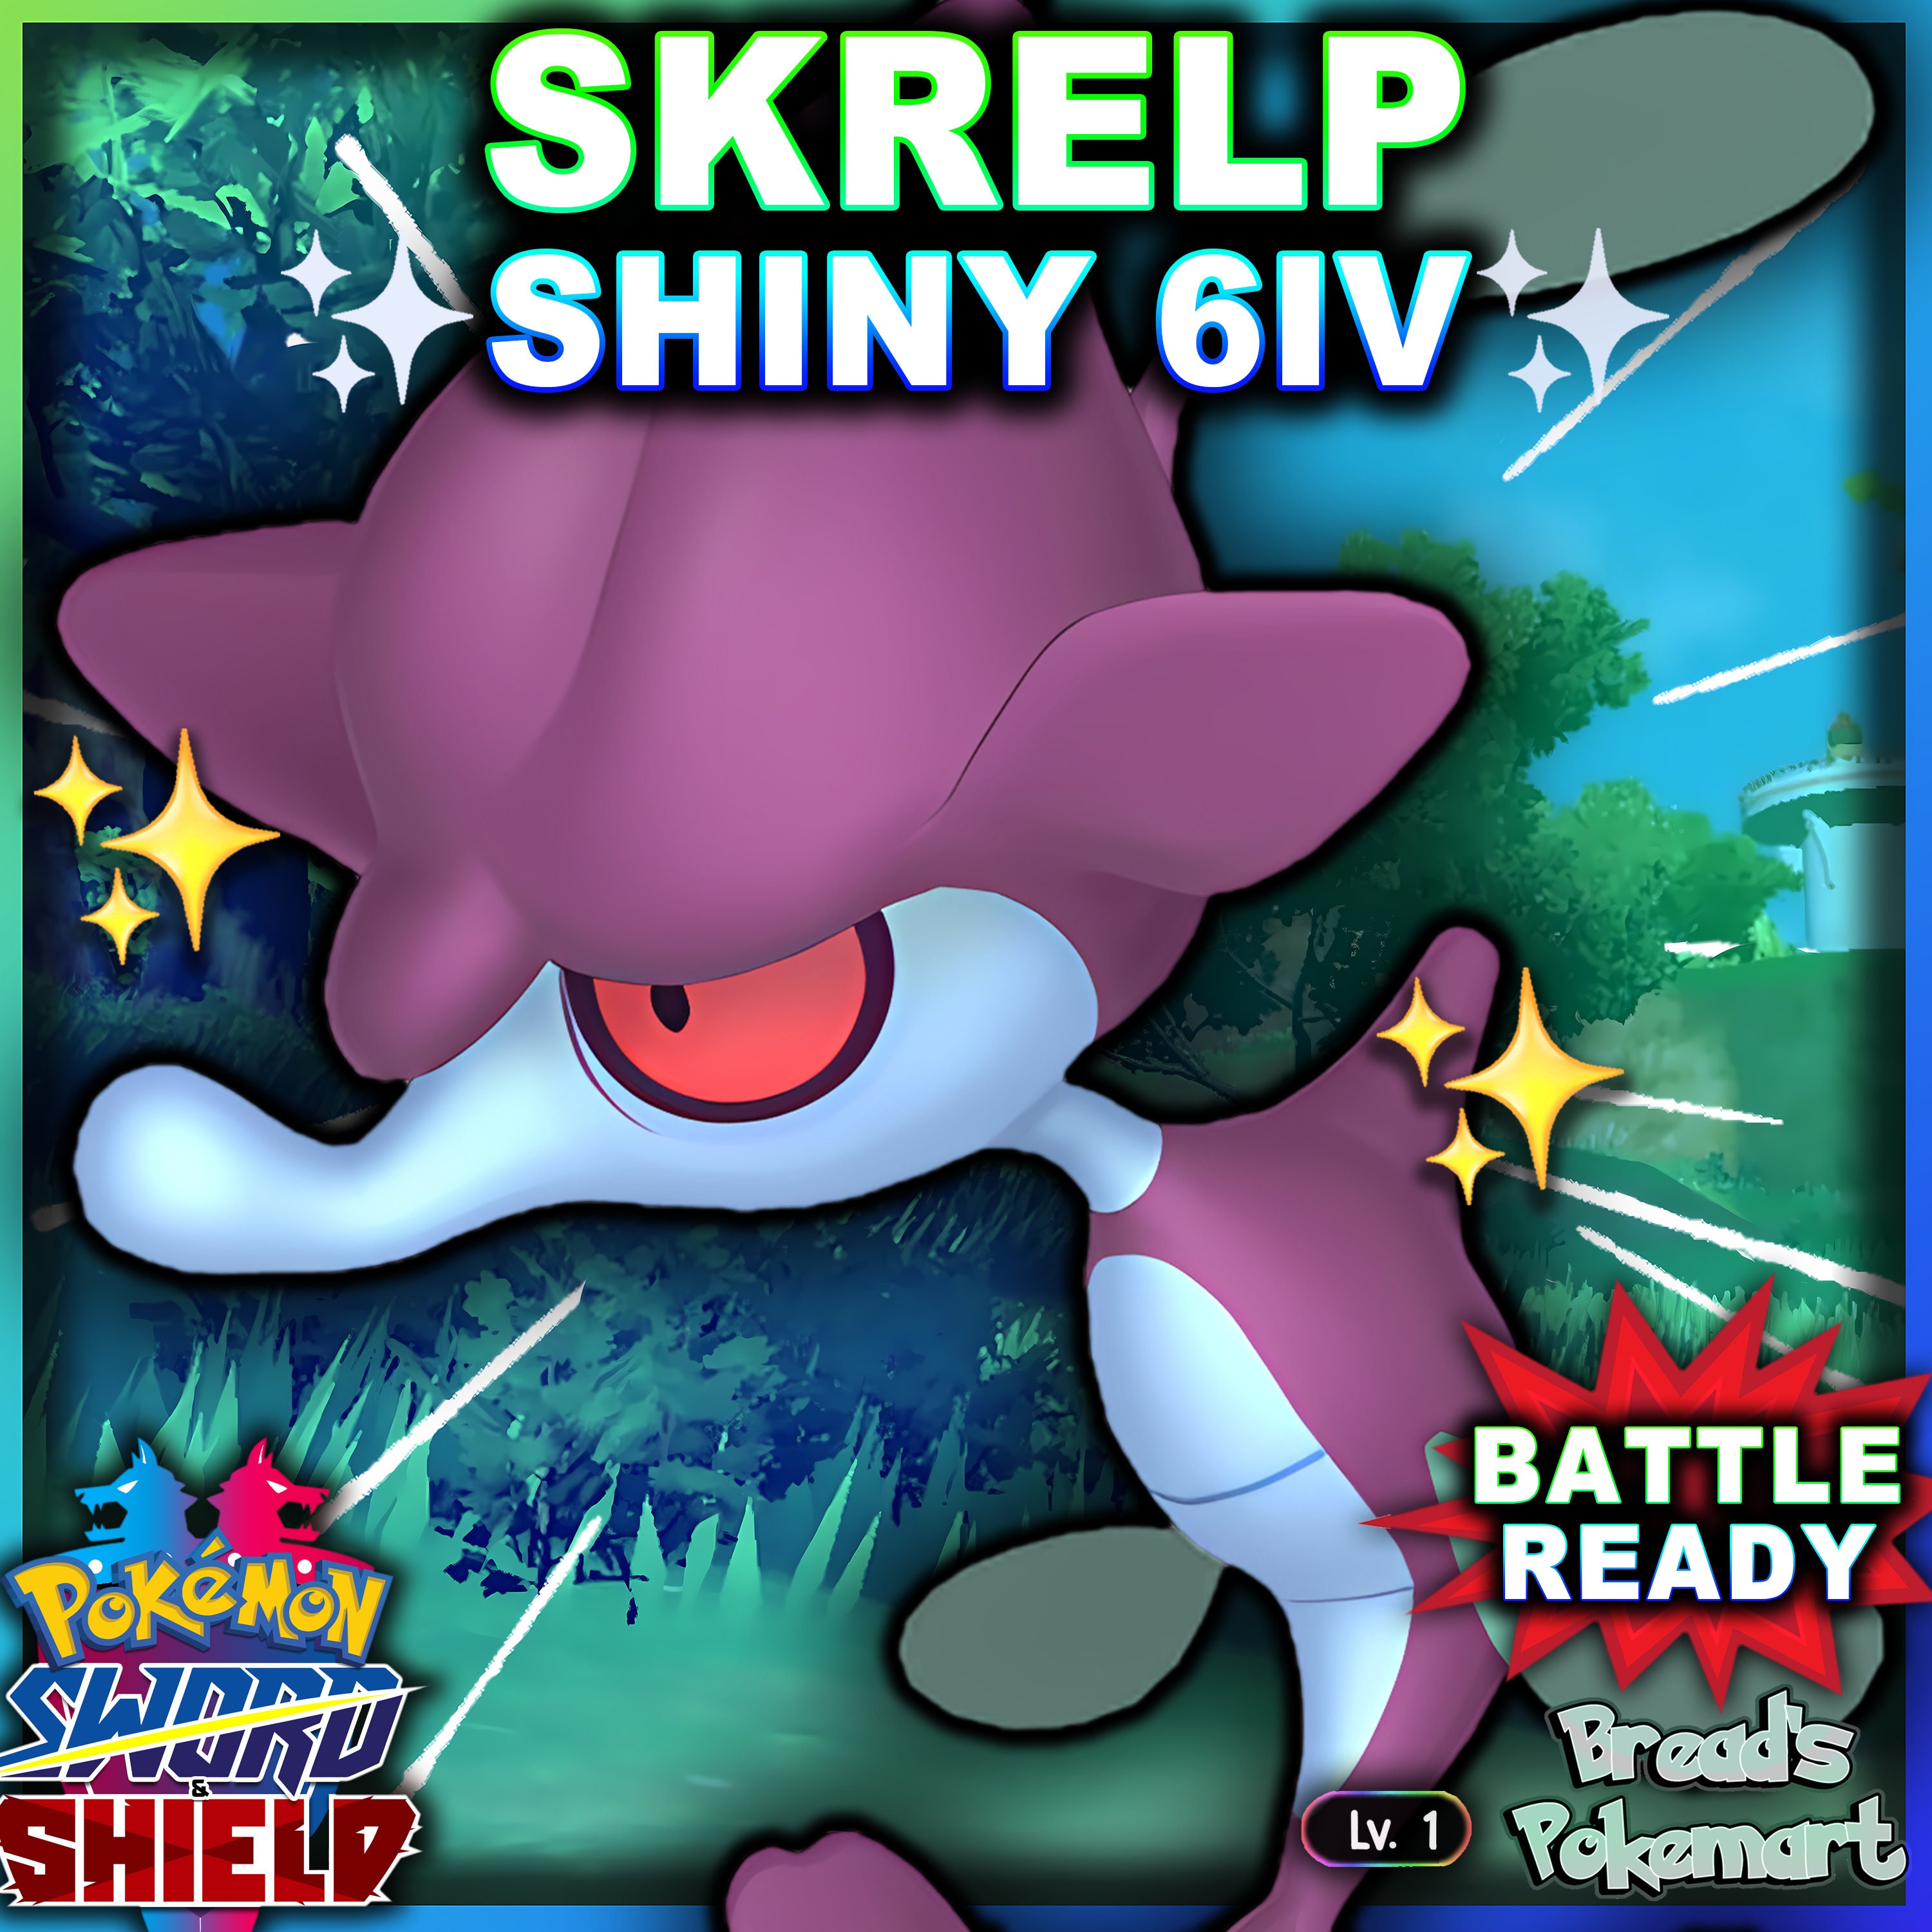 6IV Ultra Shiny Zekrom, Kyurem & Reshiram Bundle Pokemon Sword / Shield